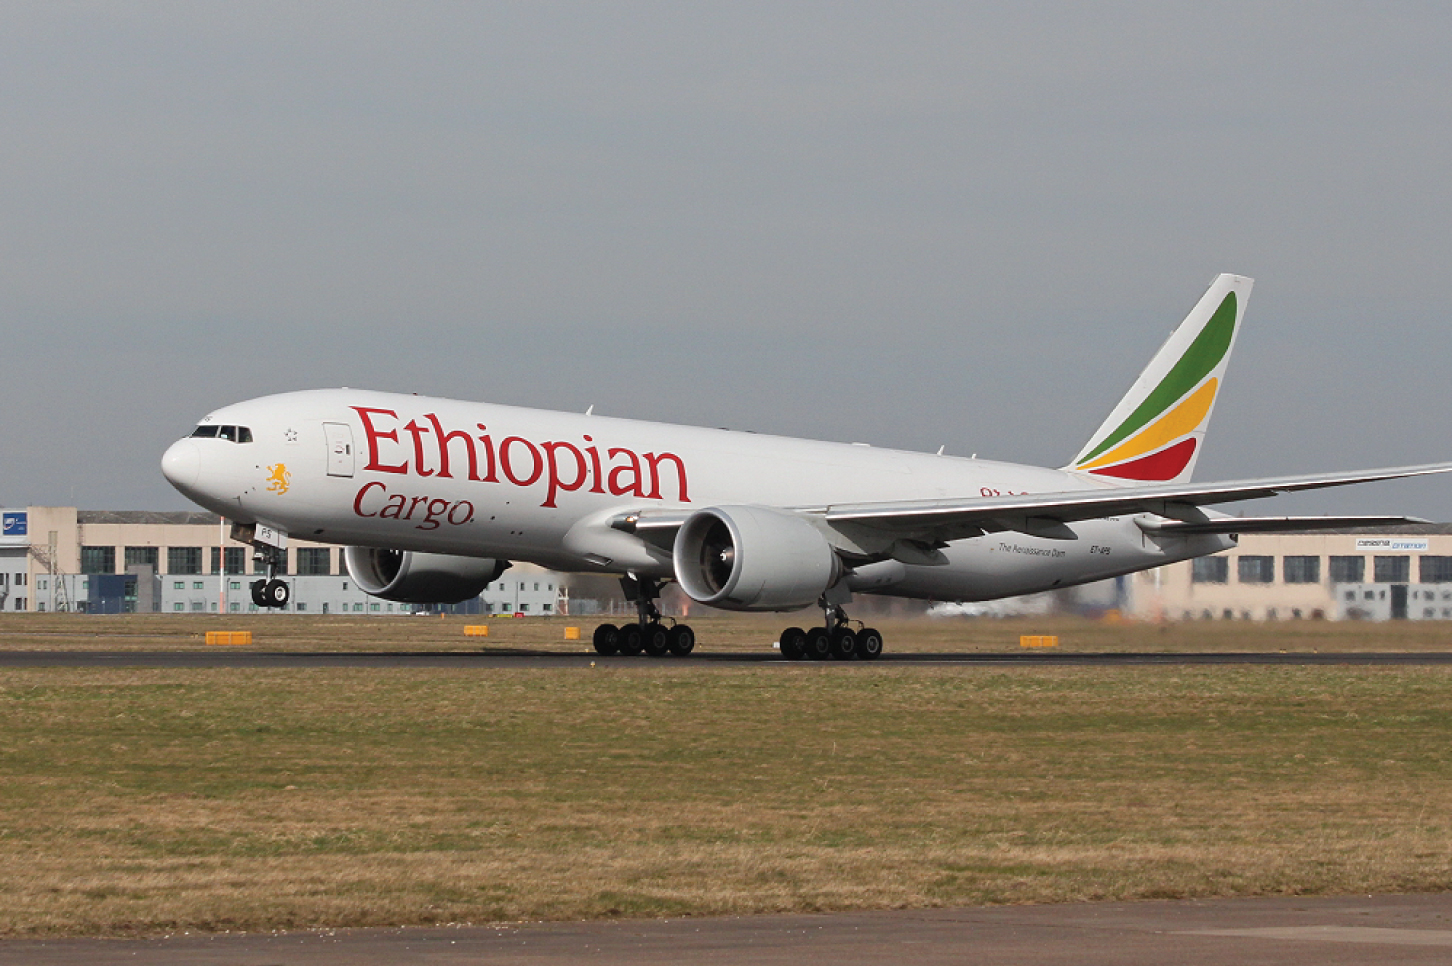 Ethiopian Cargo's B777-200F